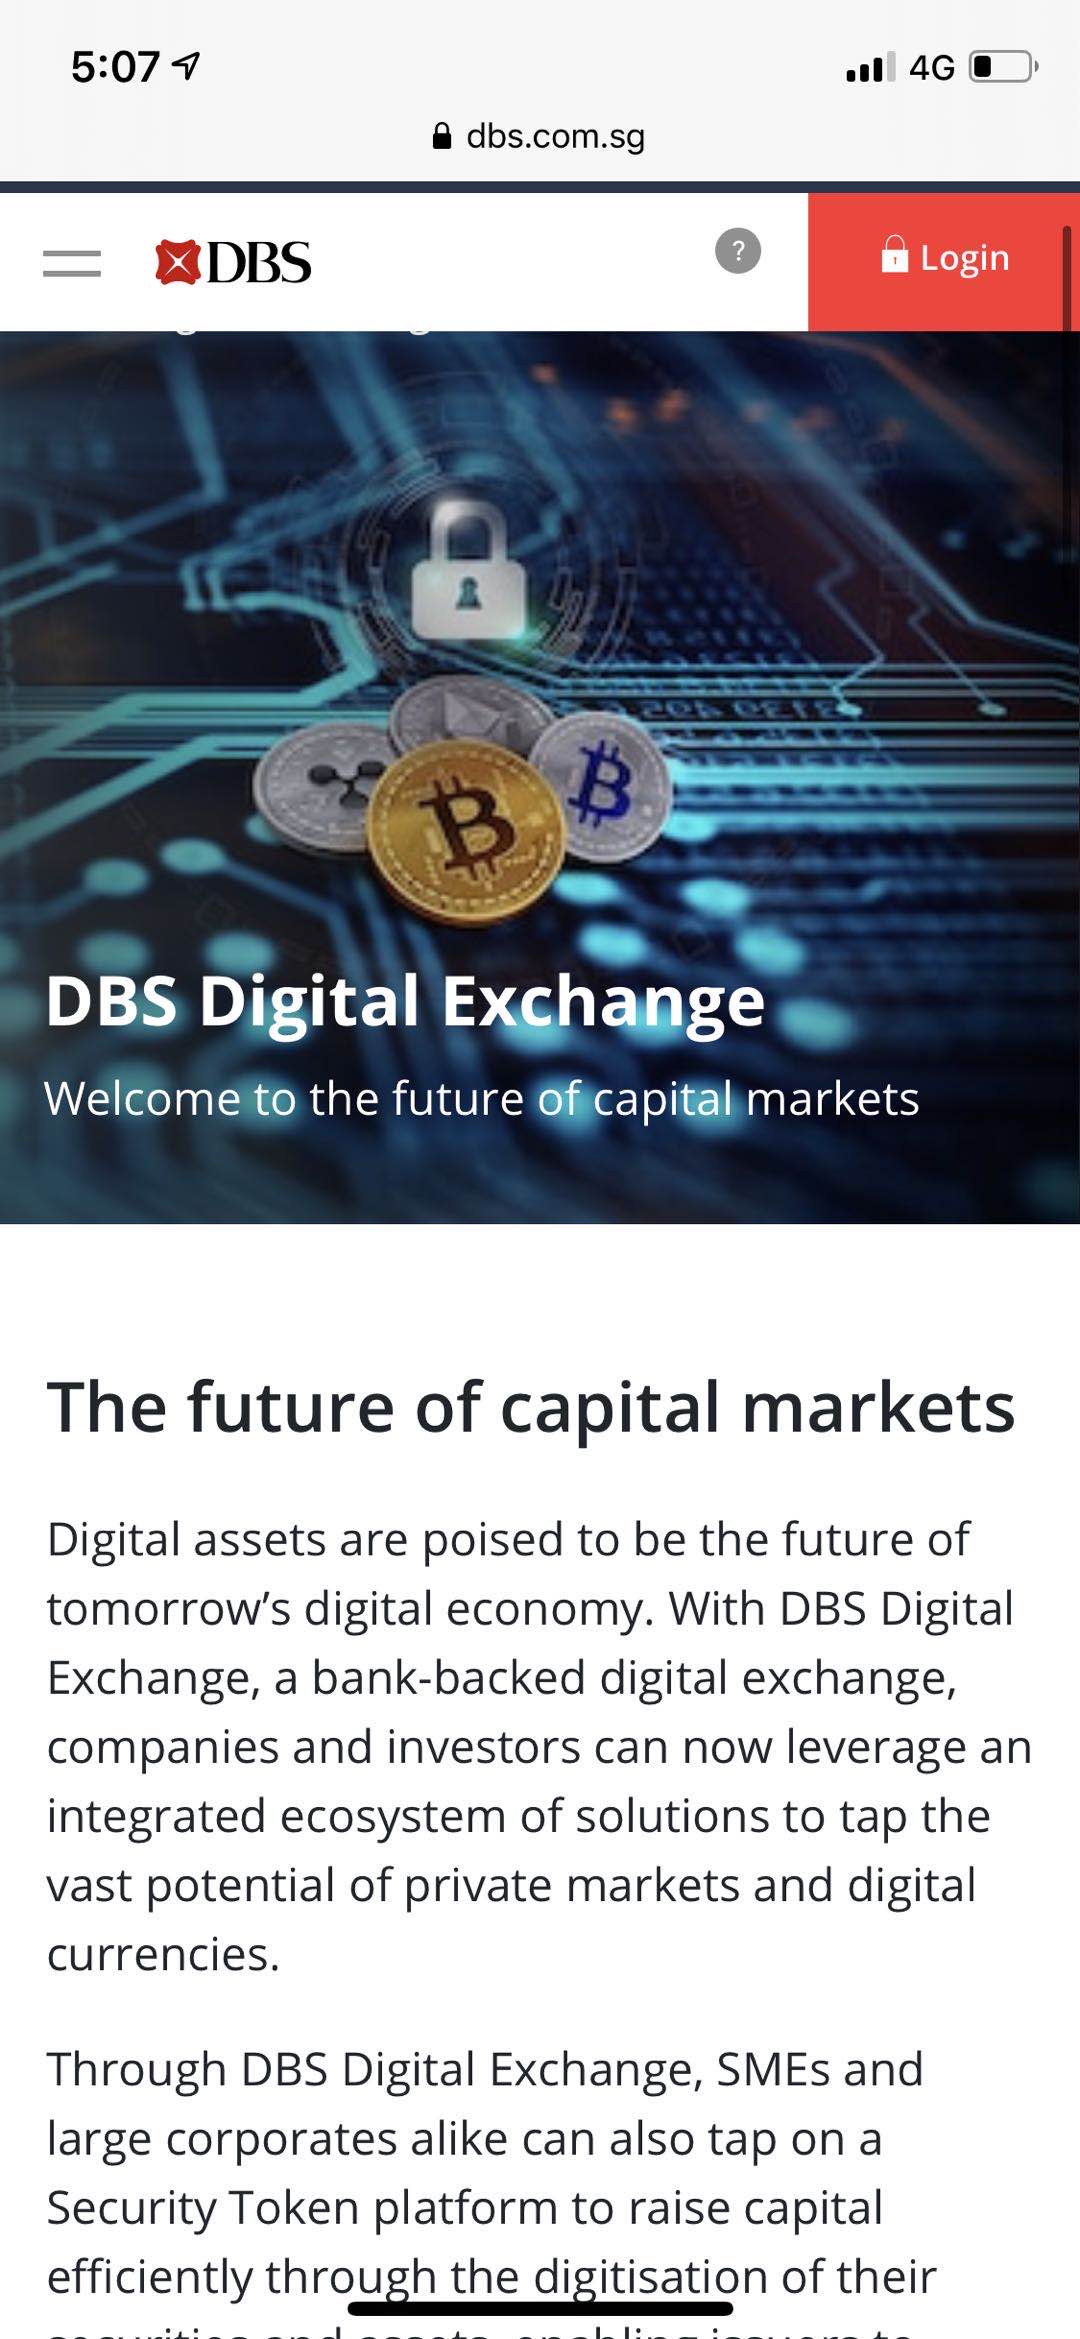 新加坡最大商业银行星展银行 Dbs 宣布推出数字货币交易平台 区块链社区 Chainnode 链节点